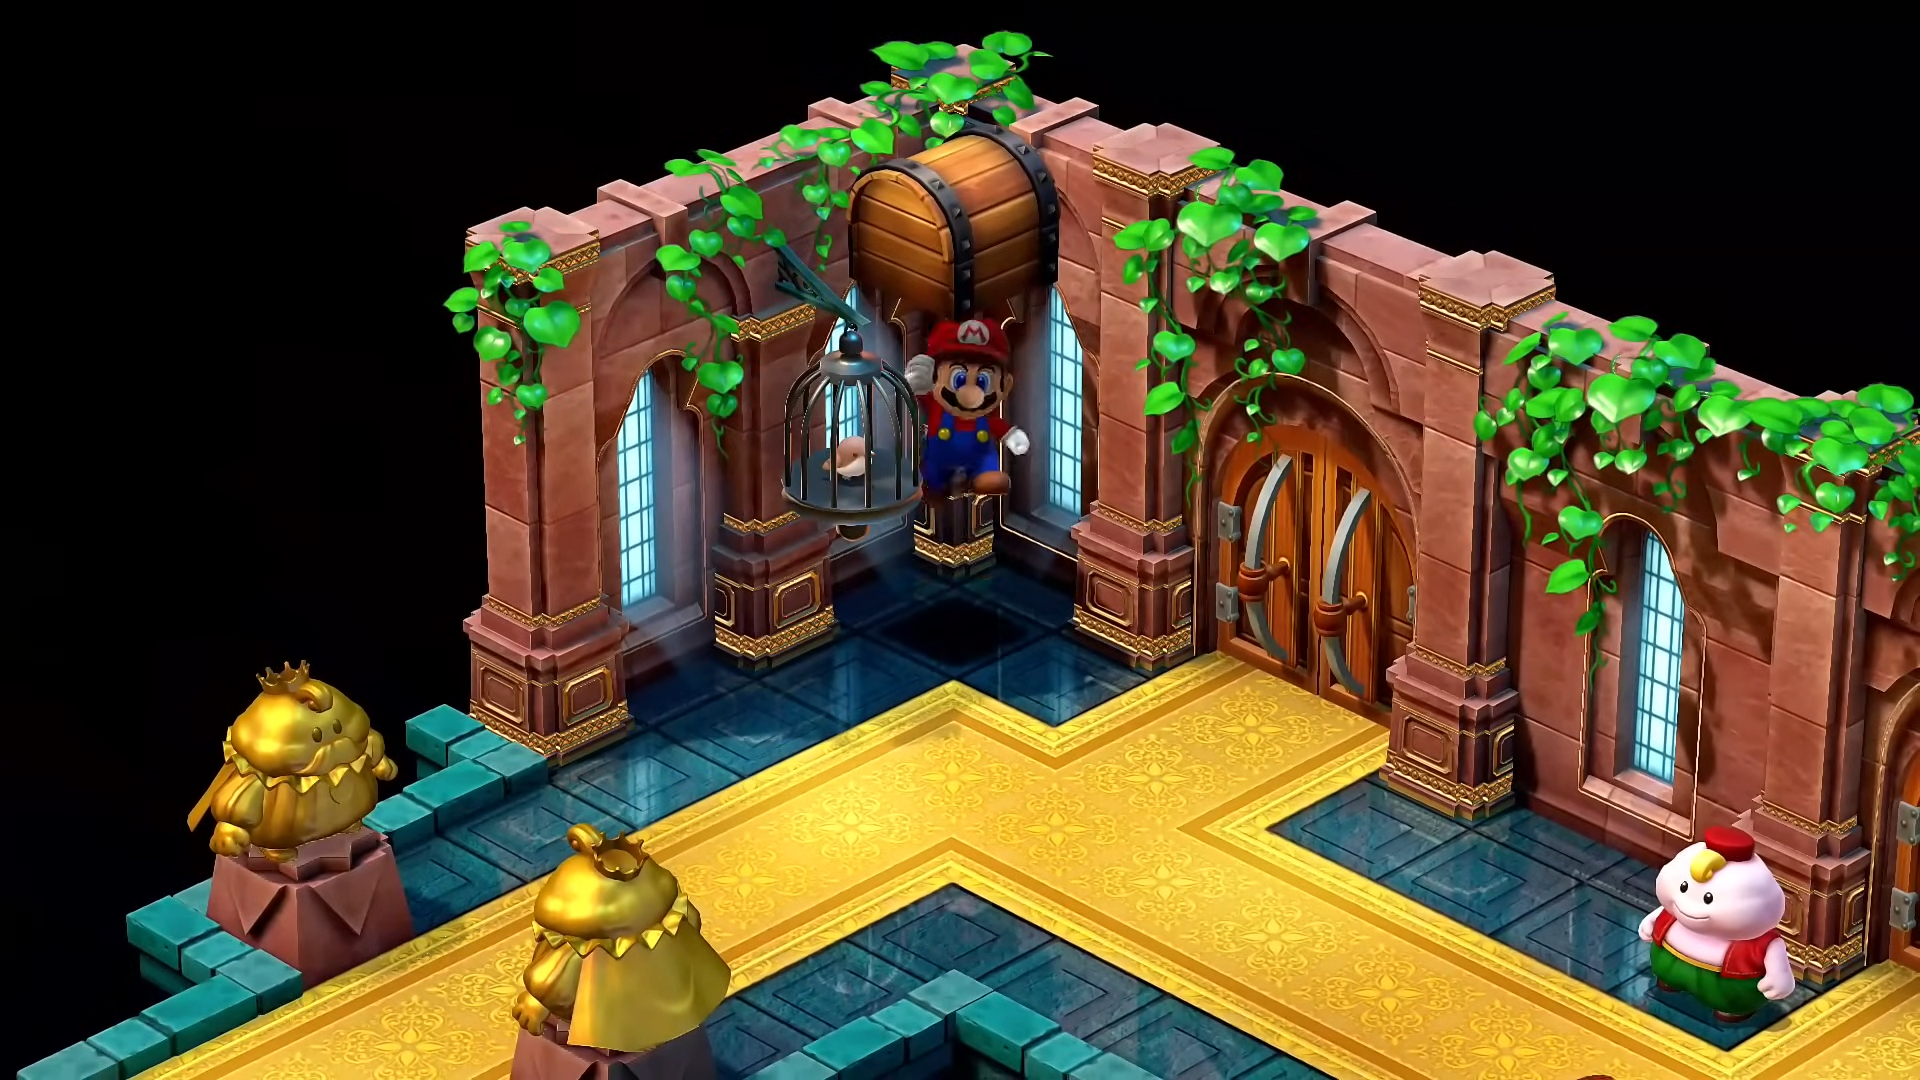 Mario in the nimbus castle.